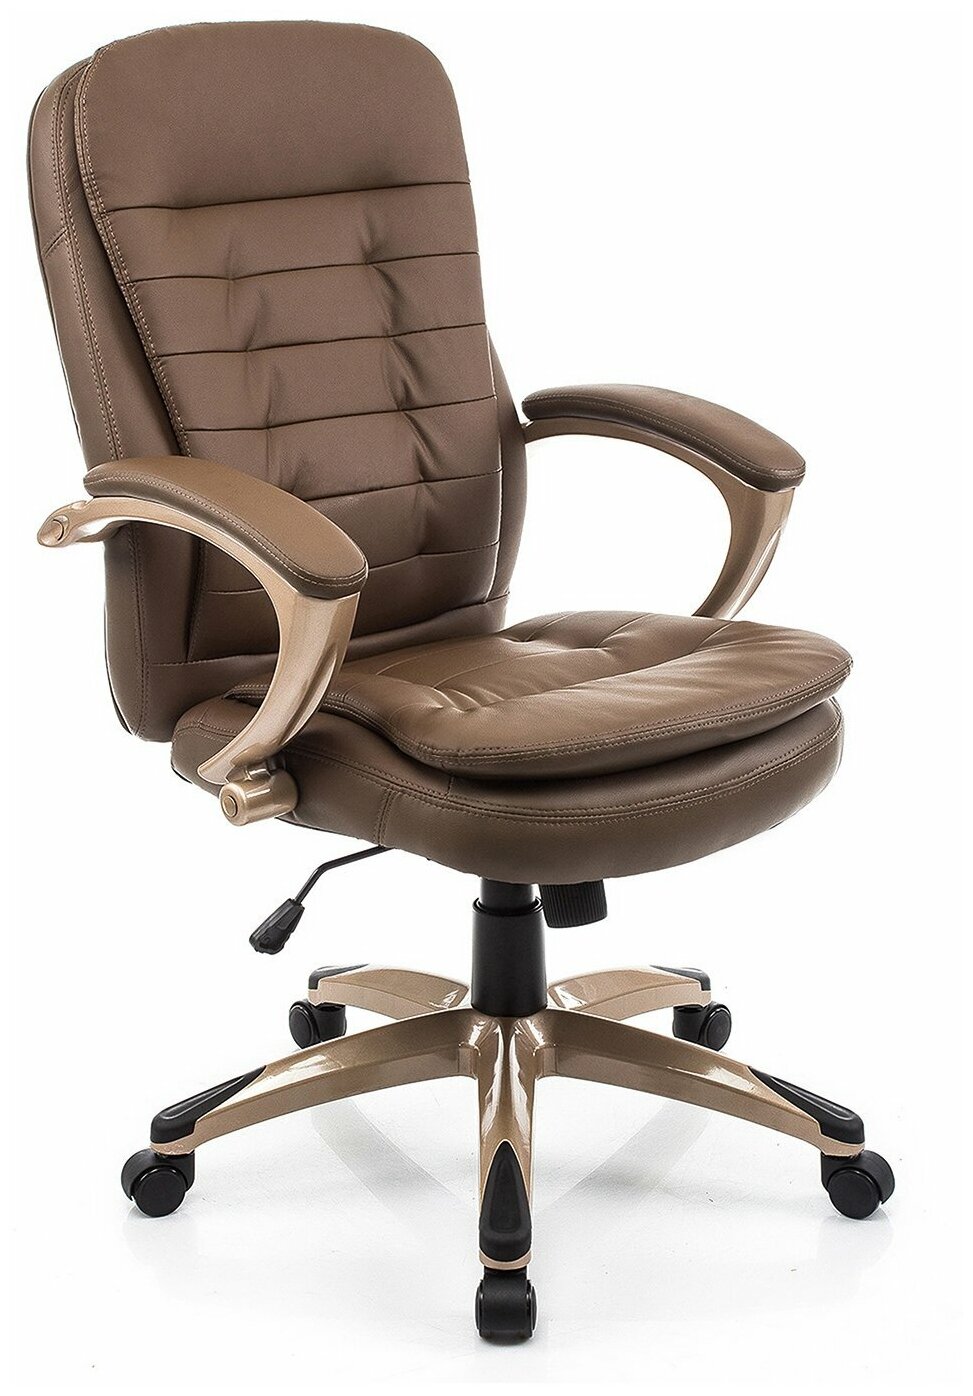 Компьютерное кресло Woodville Palamos офисное, обивка: искусственная кожа, цвет: коричневый